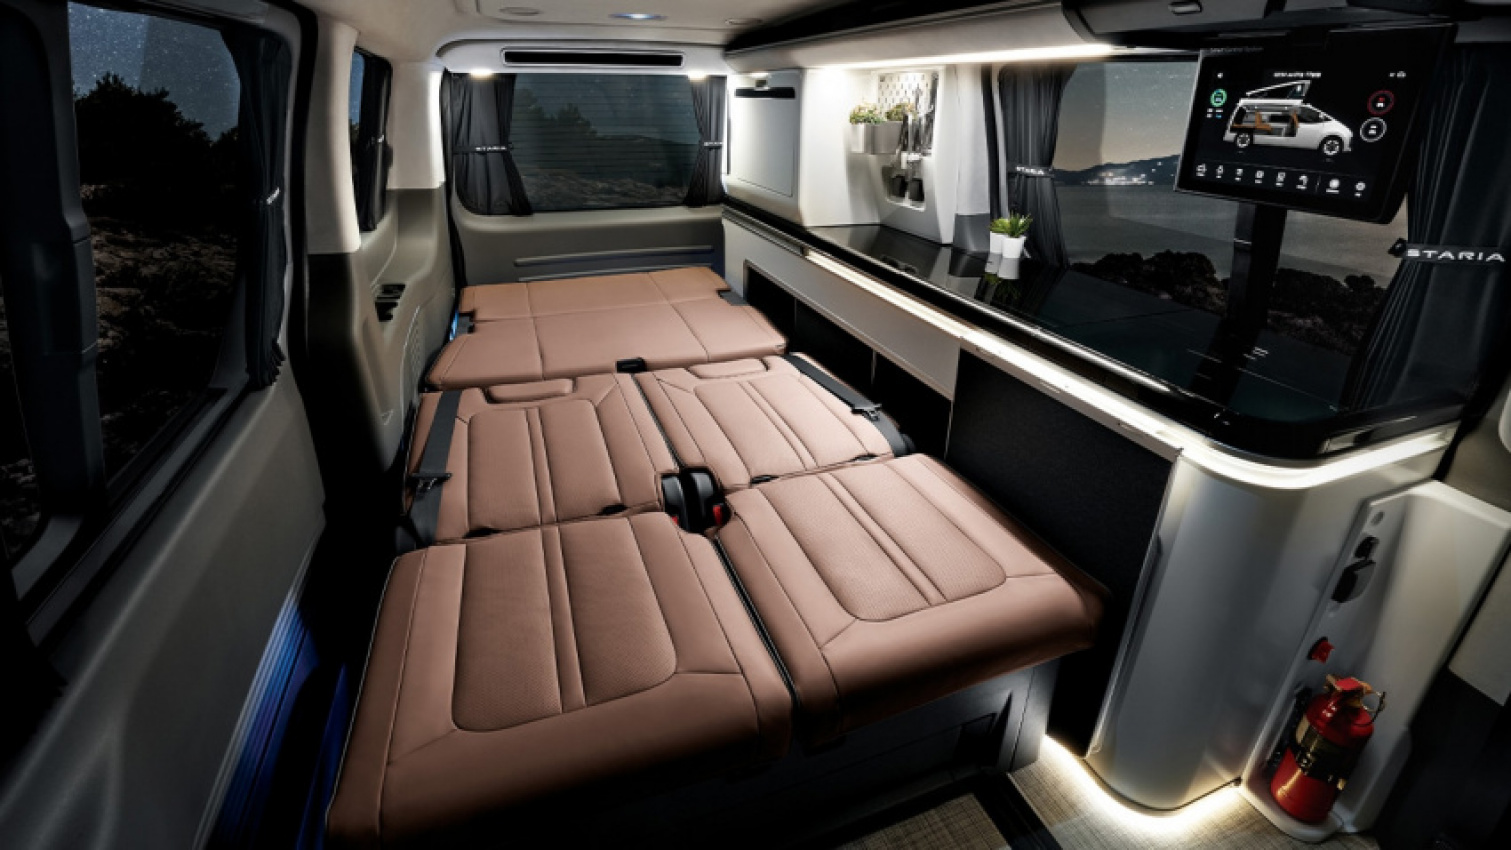 autos, cars, hyundai, news, the ultra-futuristic hyundai staria camper van offers a peek into sleeping in a spaceship